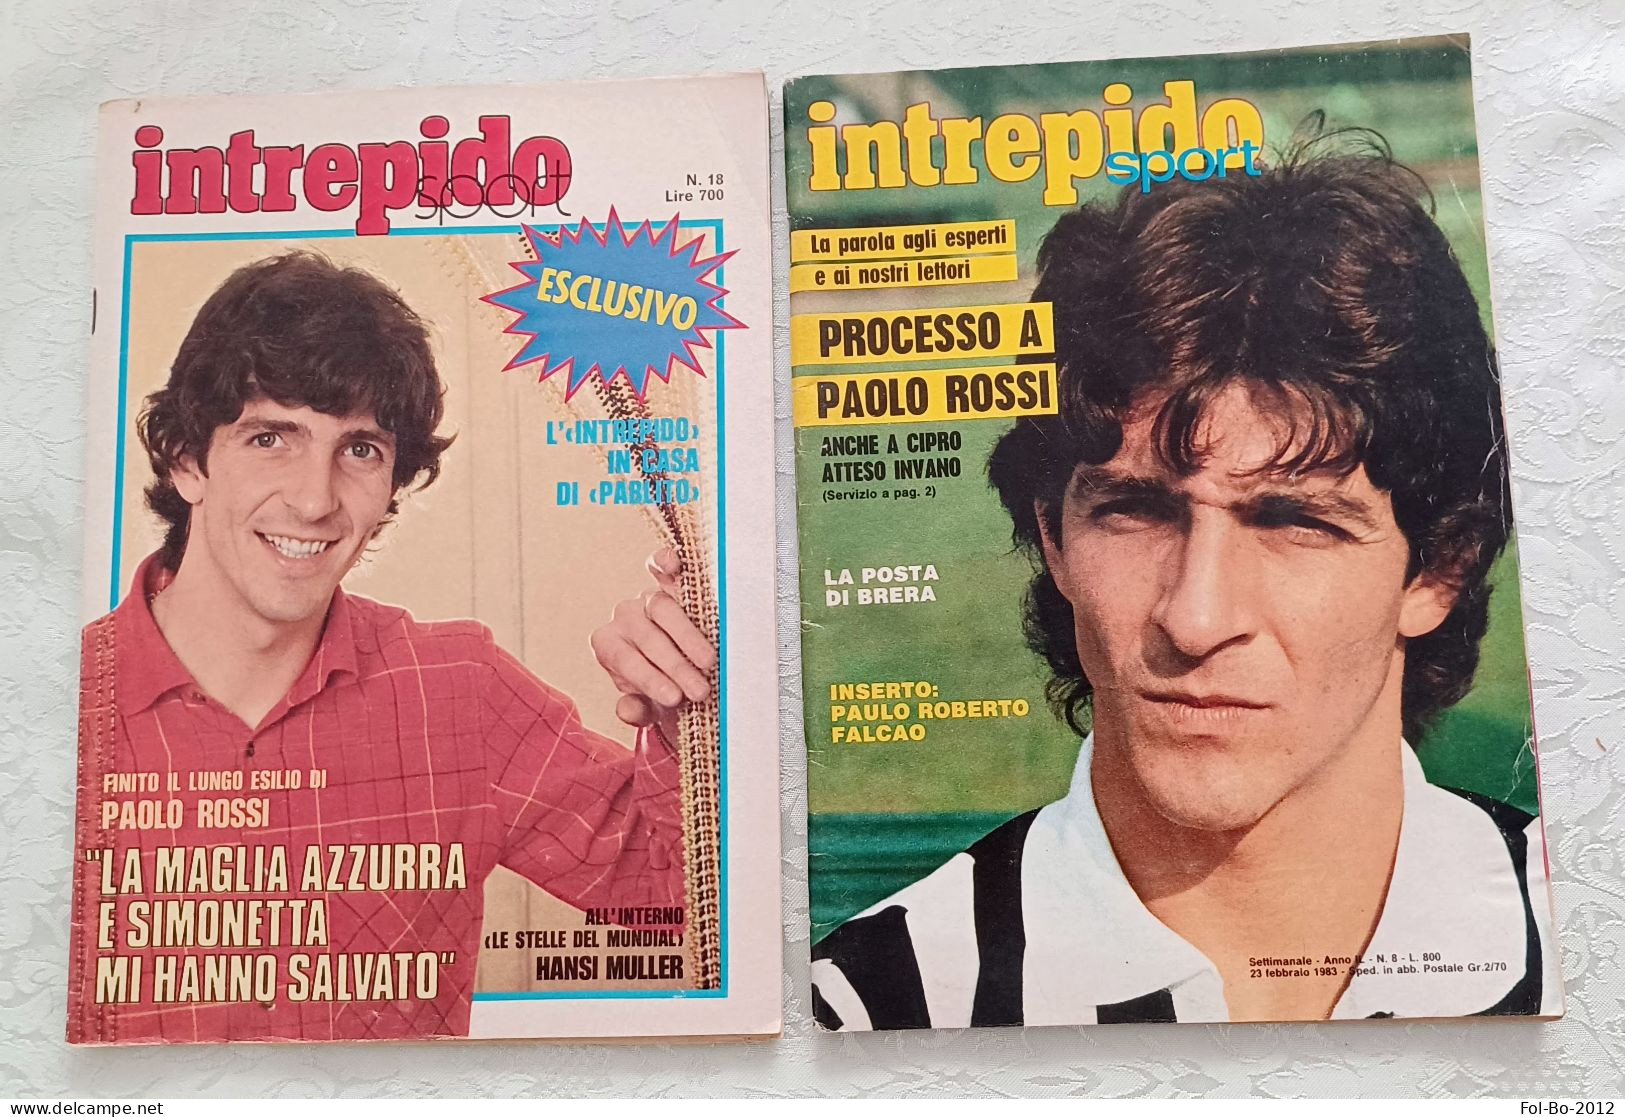 Paolo Rossi.intrepido N 18 1982 N 8.1983 - Prime Edizioni